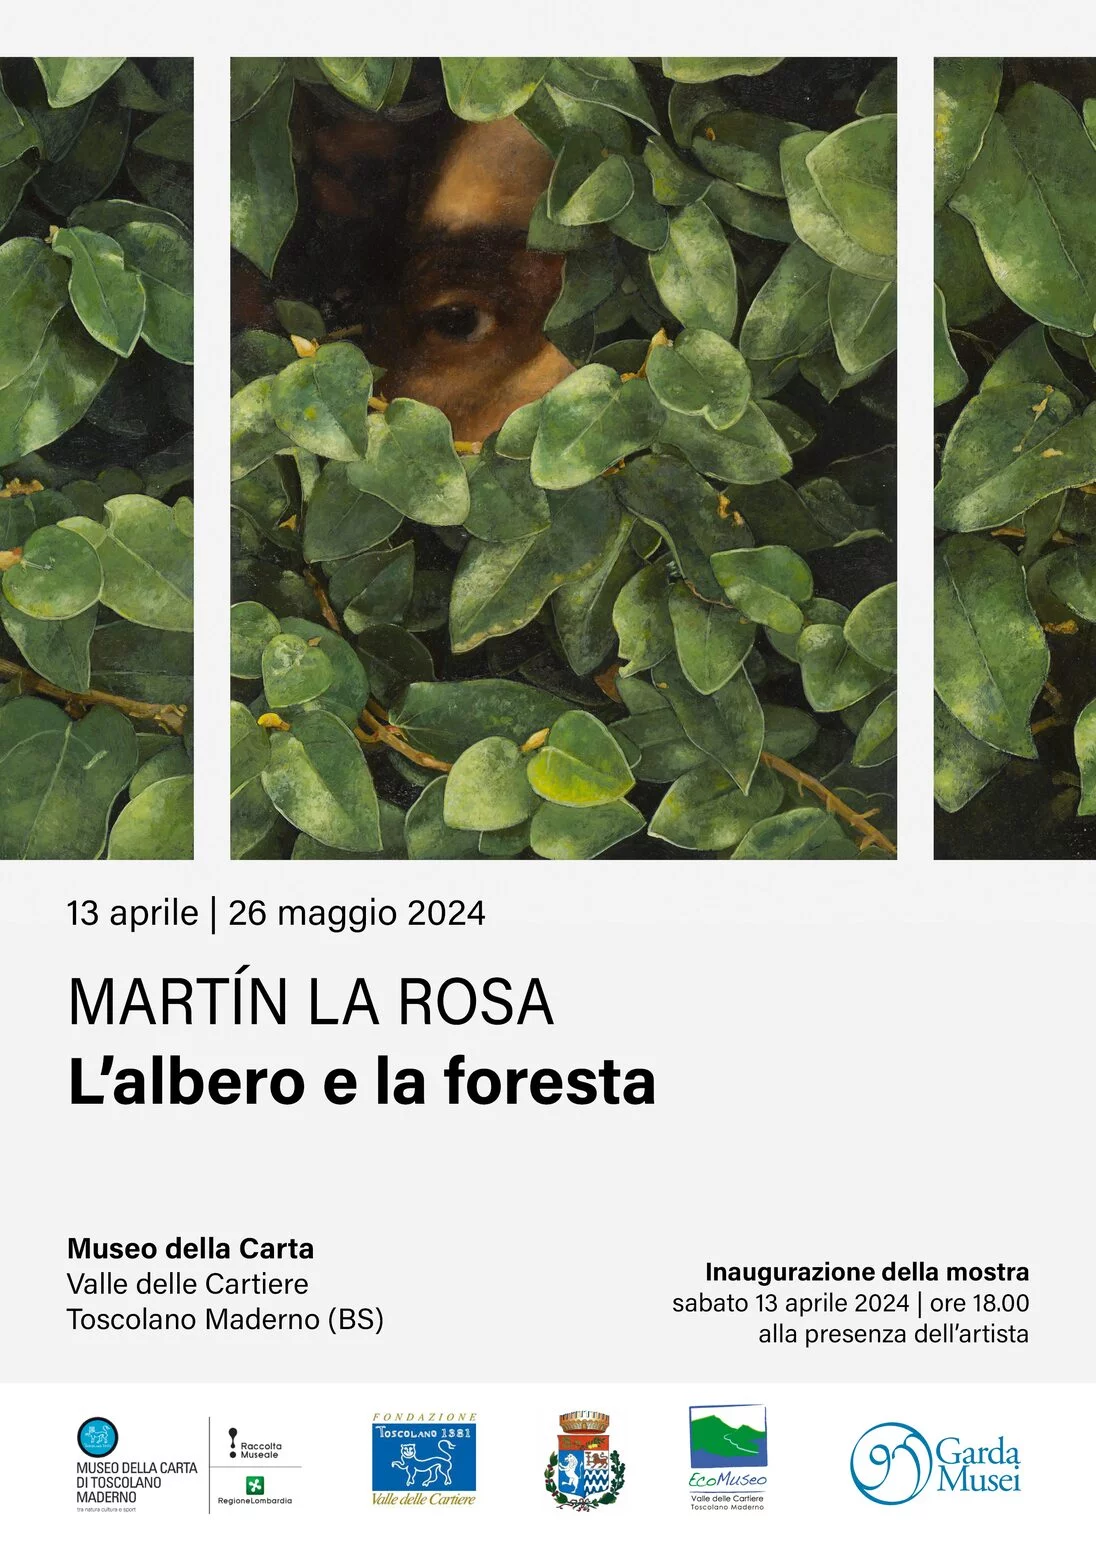 Martin La Rosa. L'Albero e la Foresta